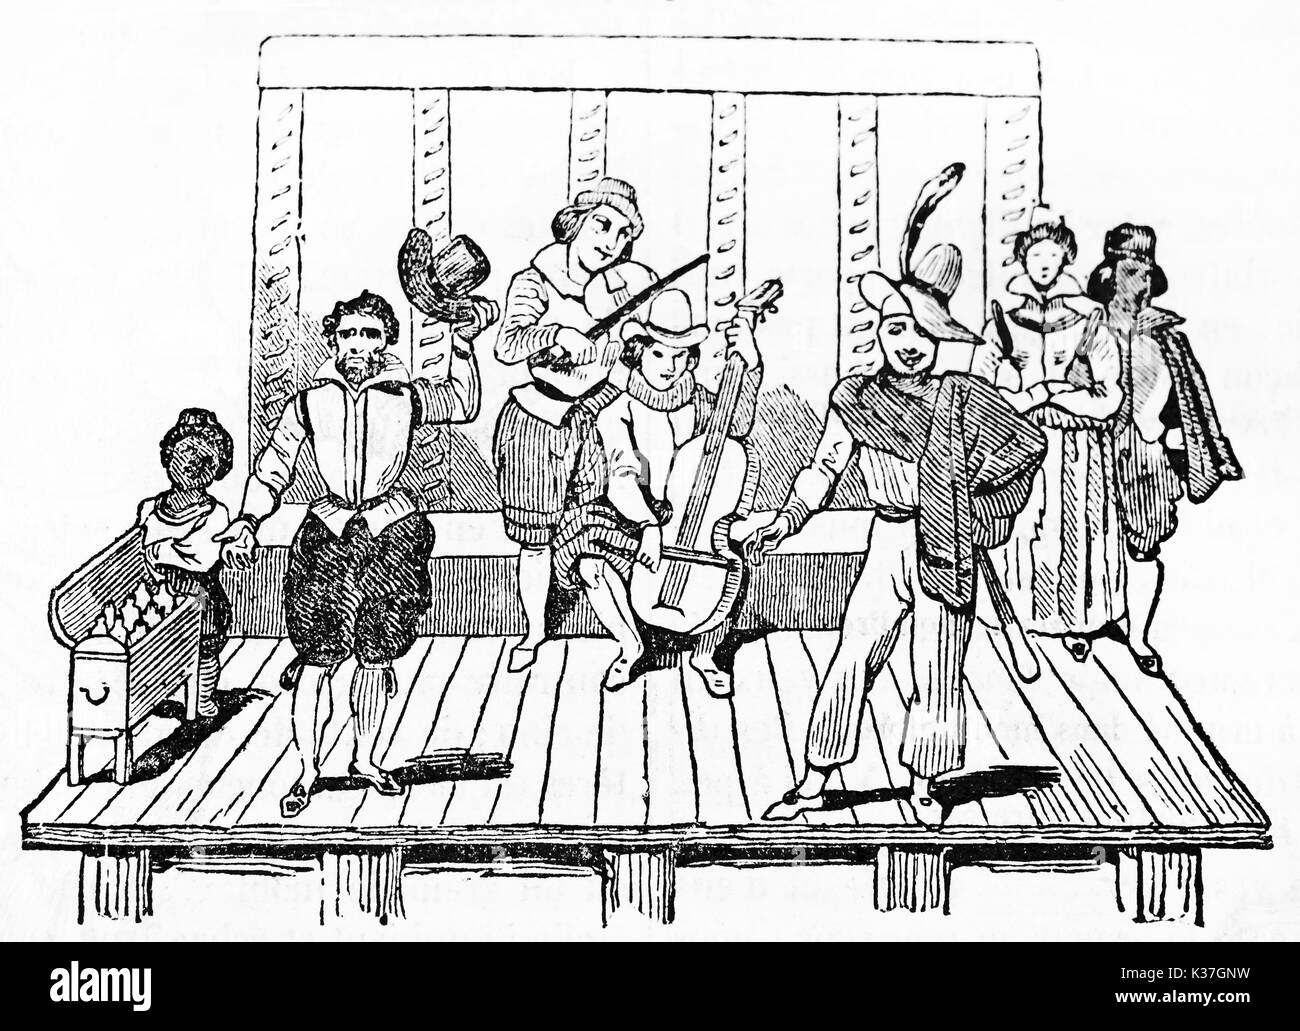 Les musiciens et les acteurs de l'ancienne (Tabarin et Mondor) théâtre de rue parisienne jouant sur la scène. Après gravure du 17ème siècle publié le magasin pittoresque Paris 1834 Banque D'Images